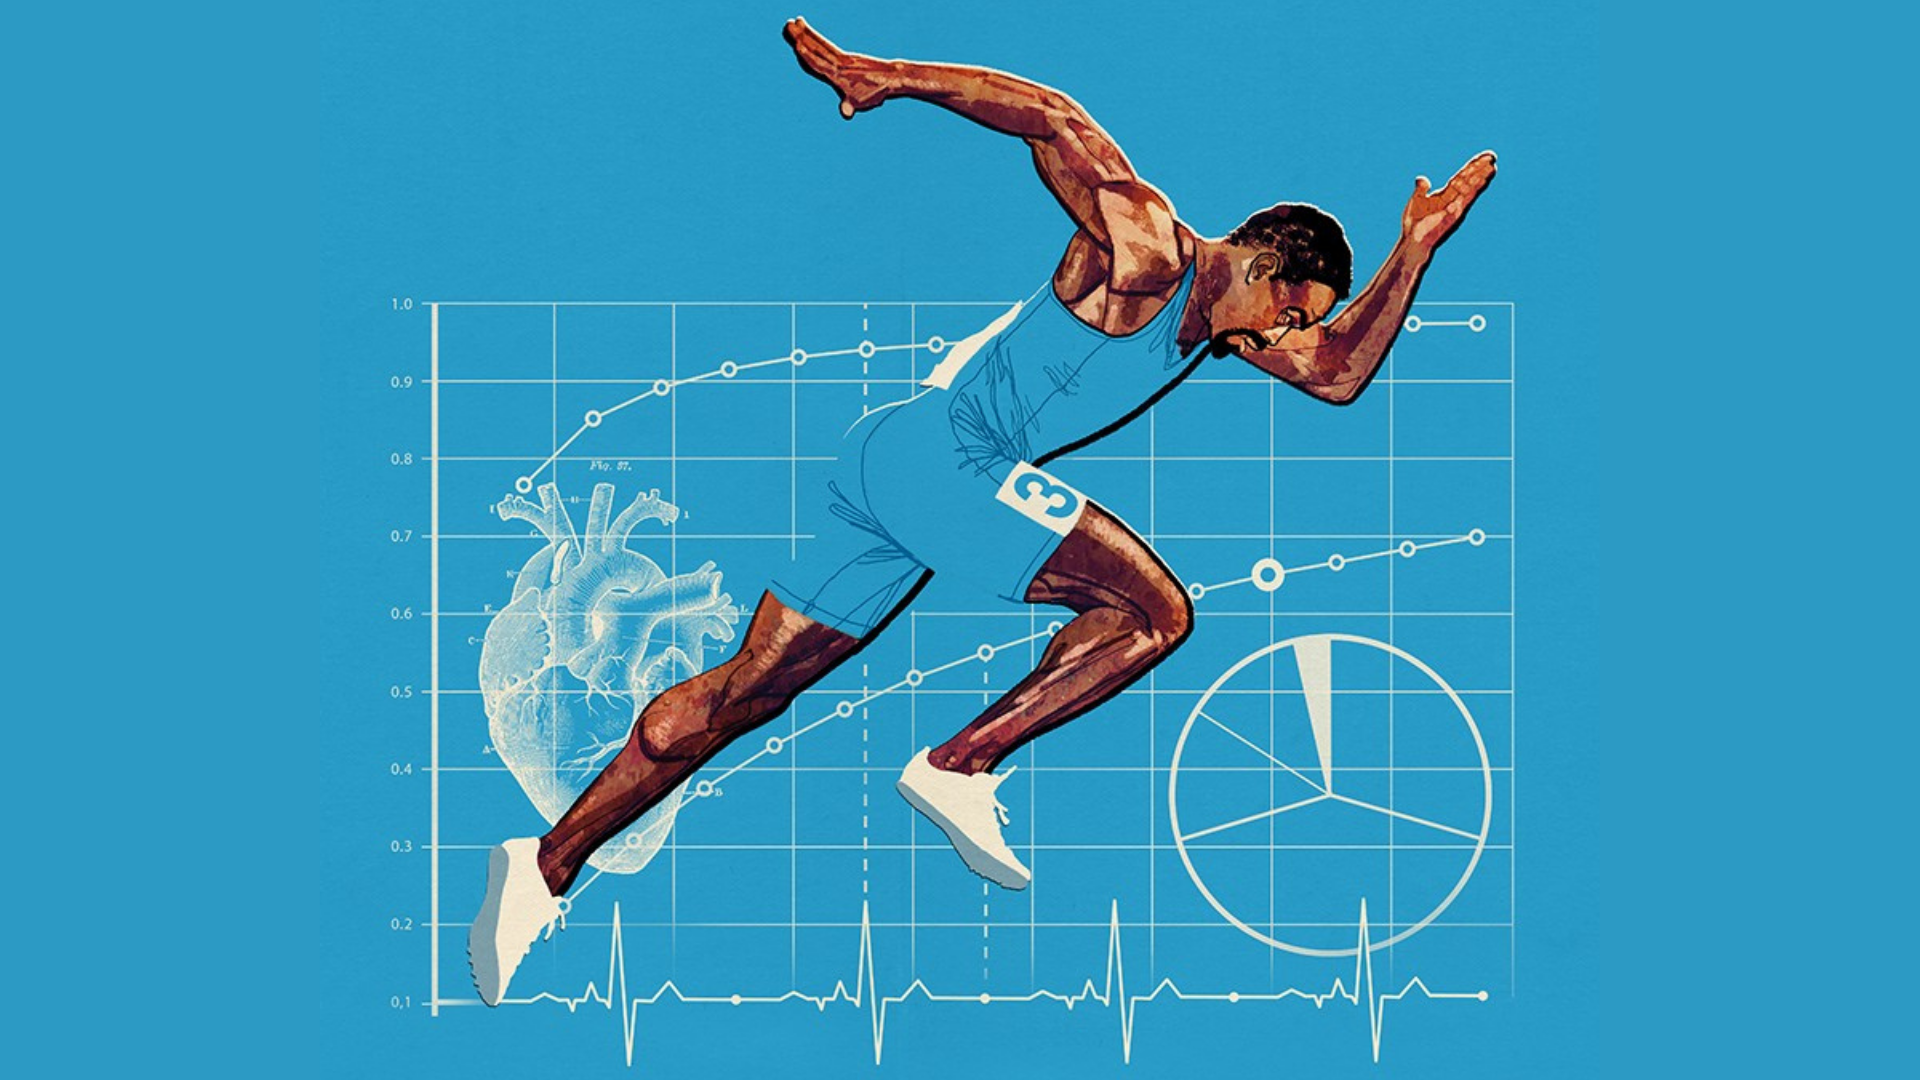 Sprint koşusu yapan bir atletin illustration görseli.